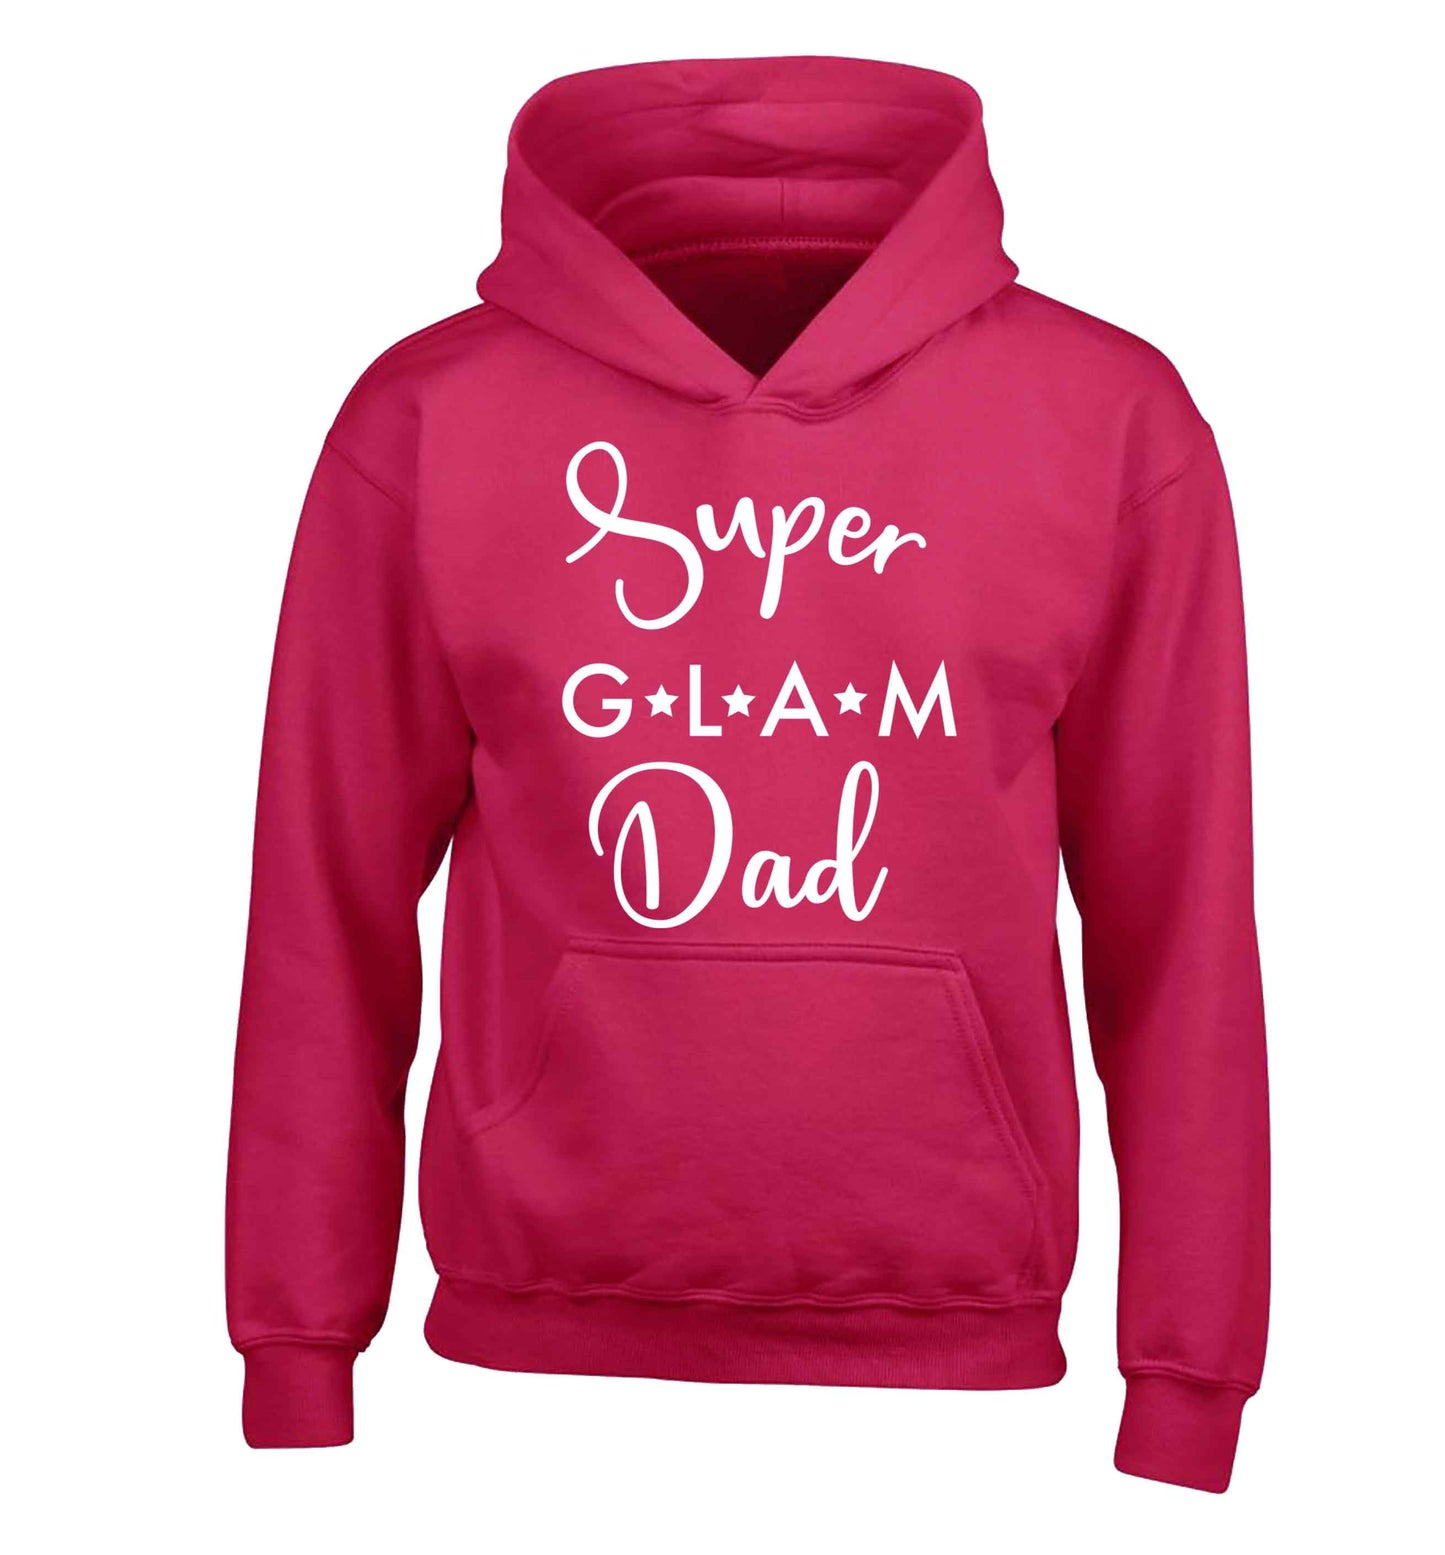 Super glam Dad children's pink hoodie 12-13 Years